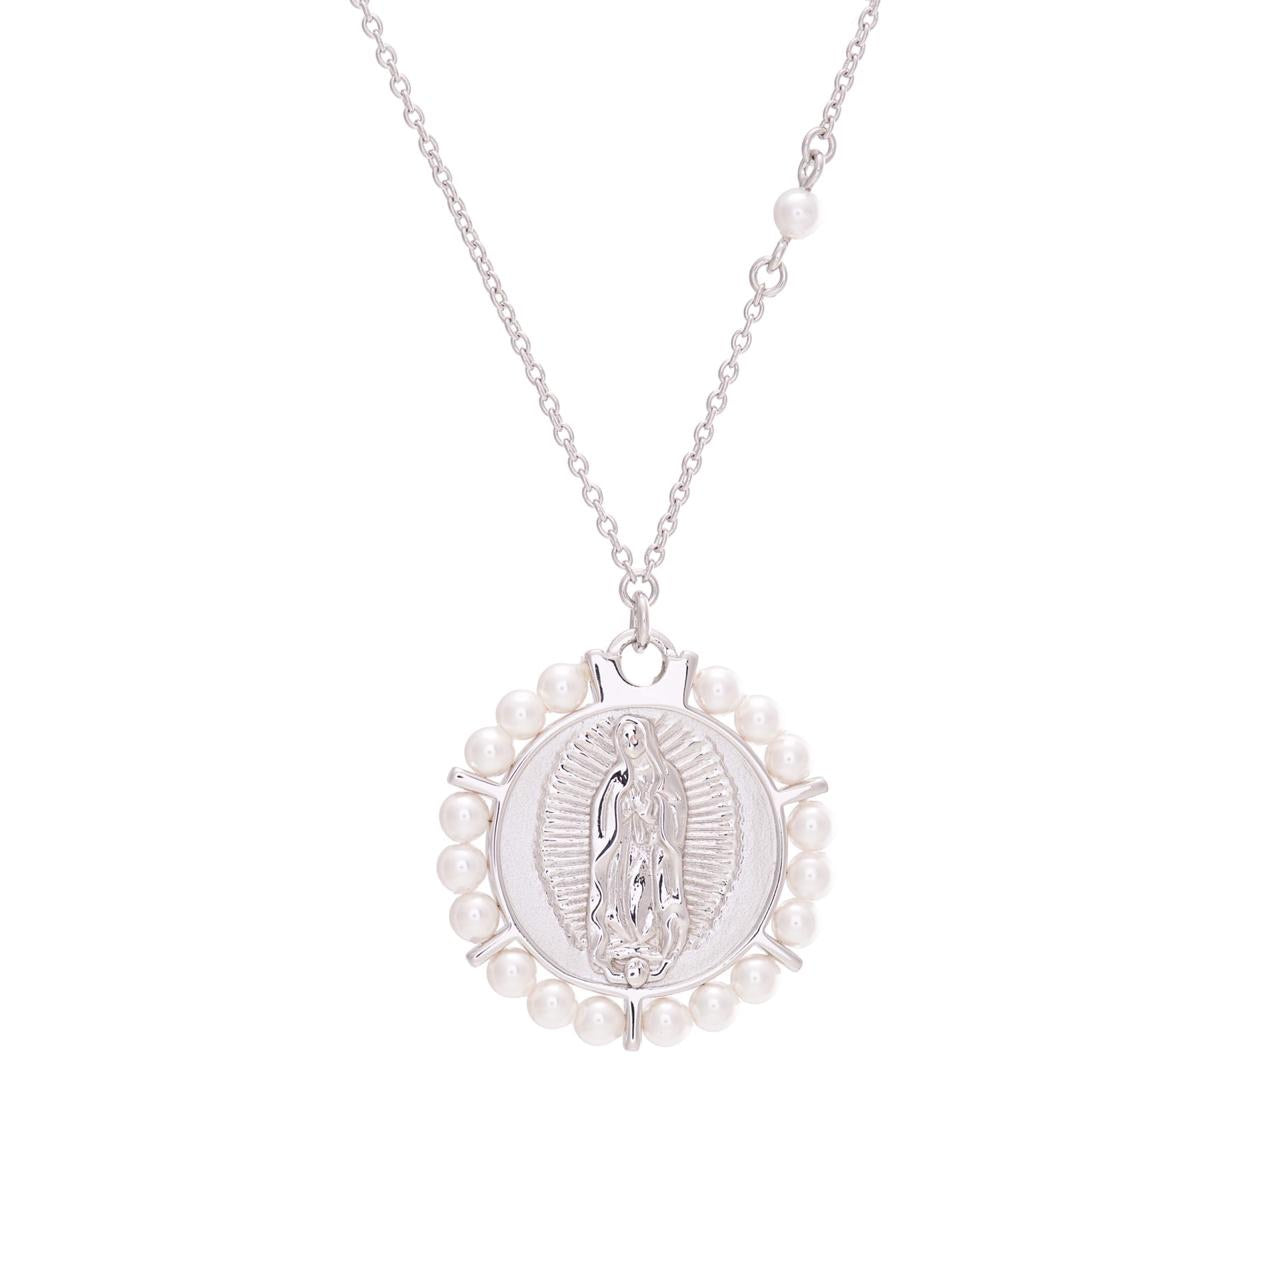 Medalla Virgen de Guadalupe con marco de perlas